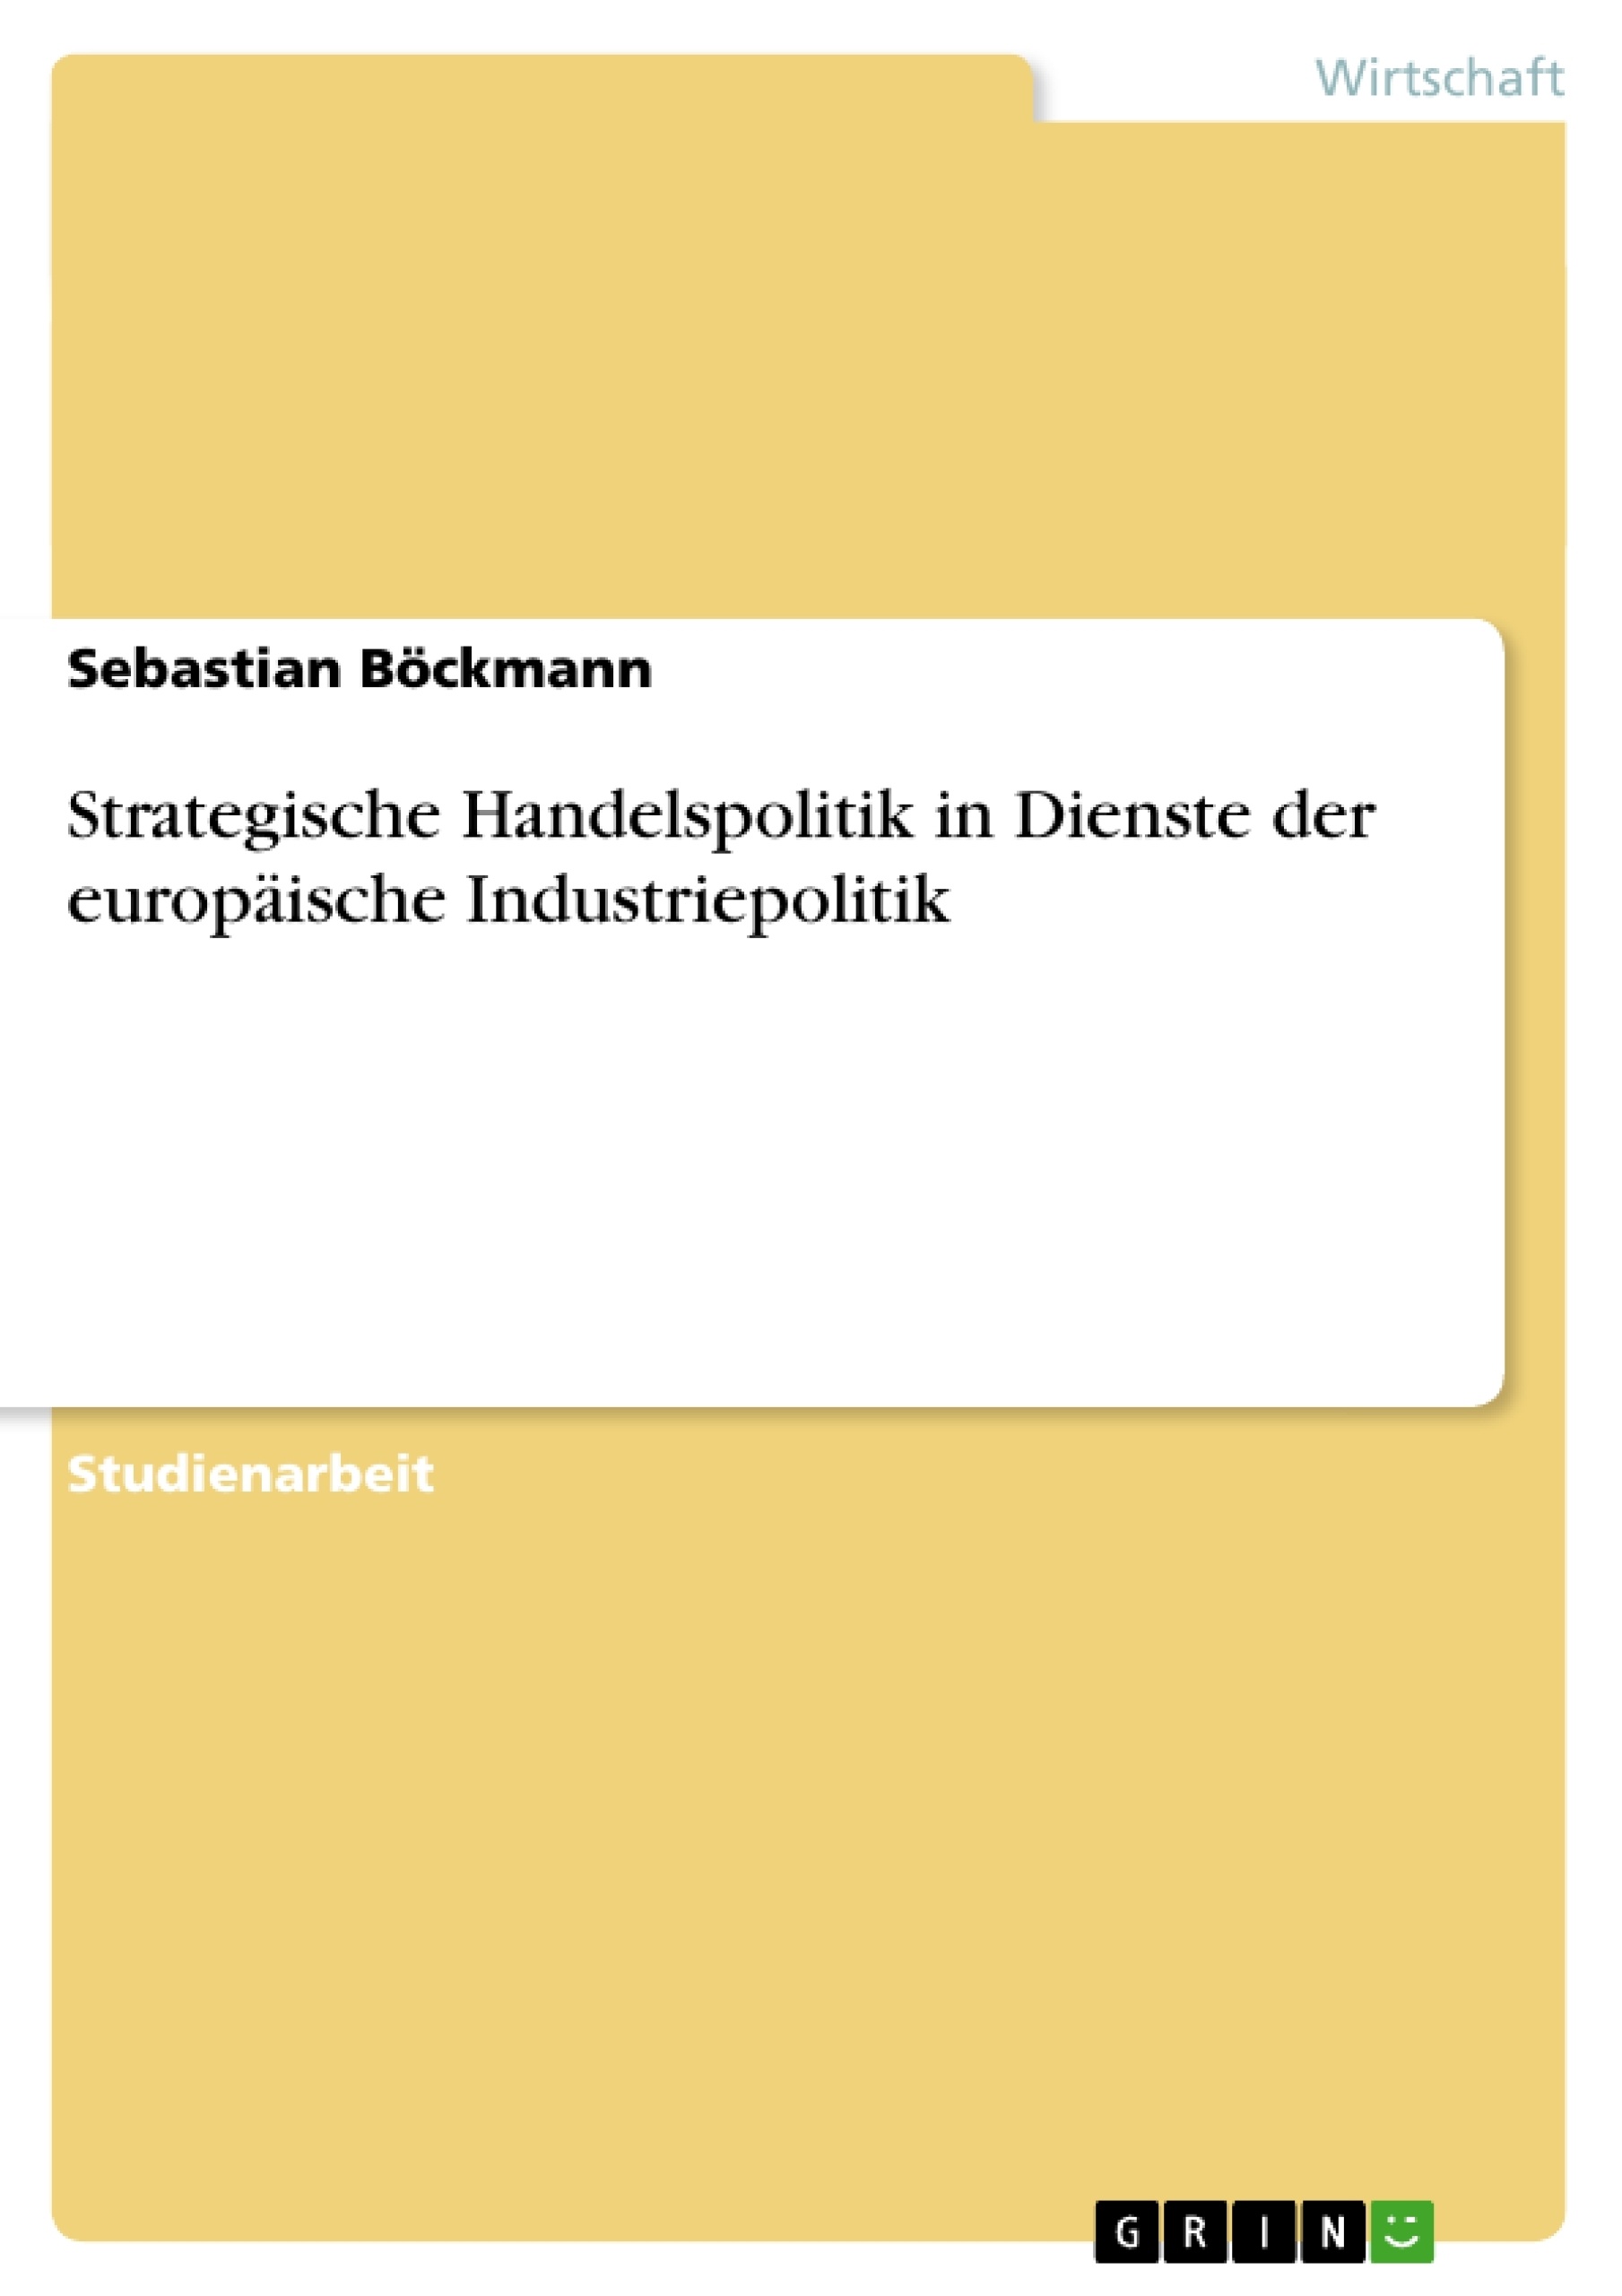 Titel: Strategische Handelspolitik in Dienste der europäische Industriepolitik